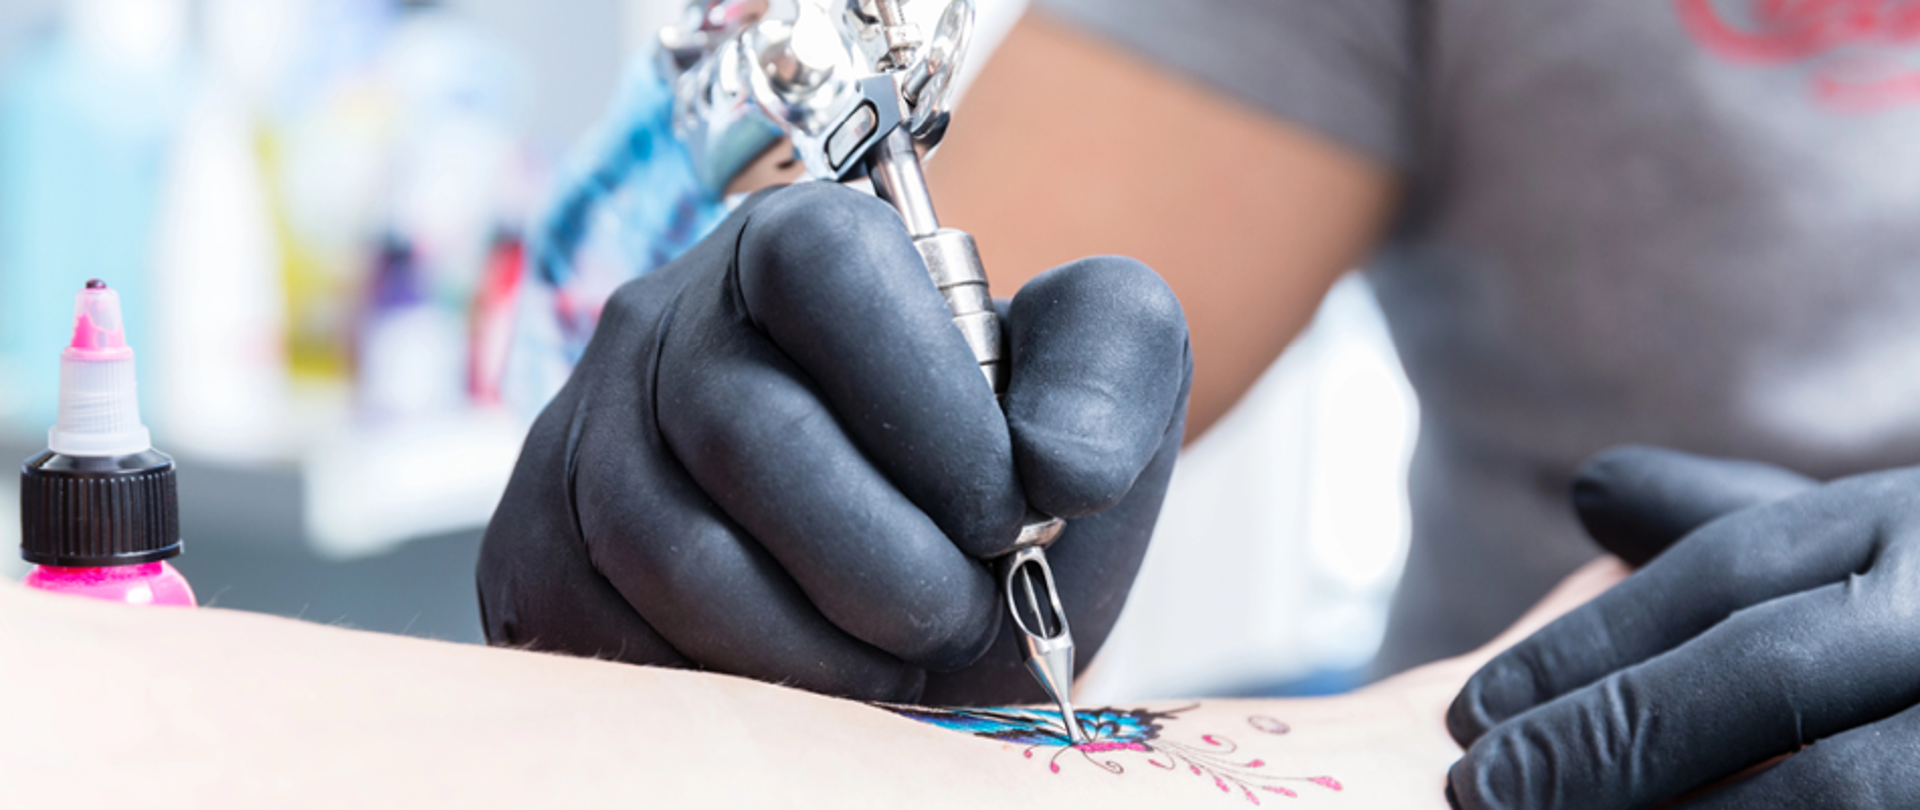 Tatuażysta wykonujący tatuaż na ręce klienta